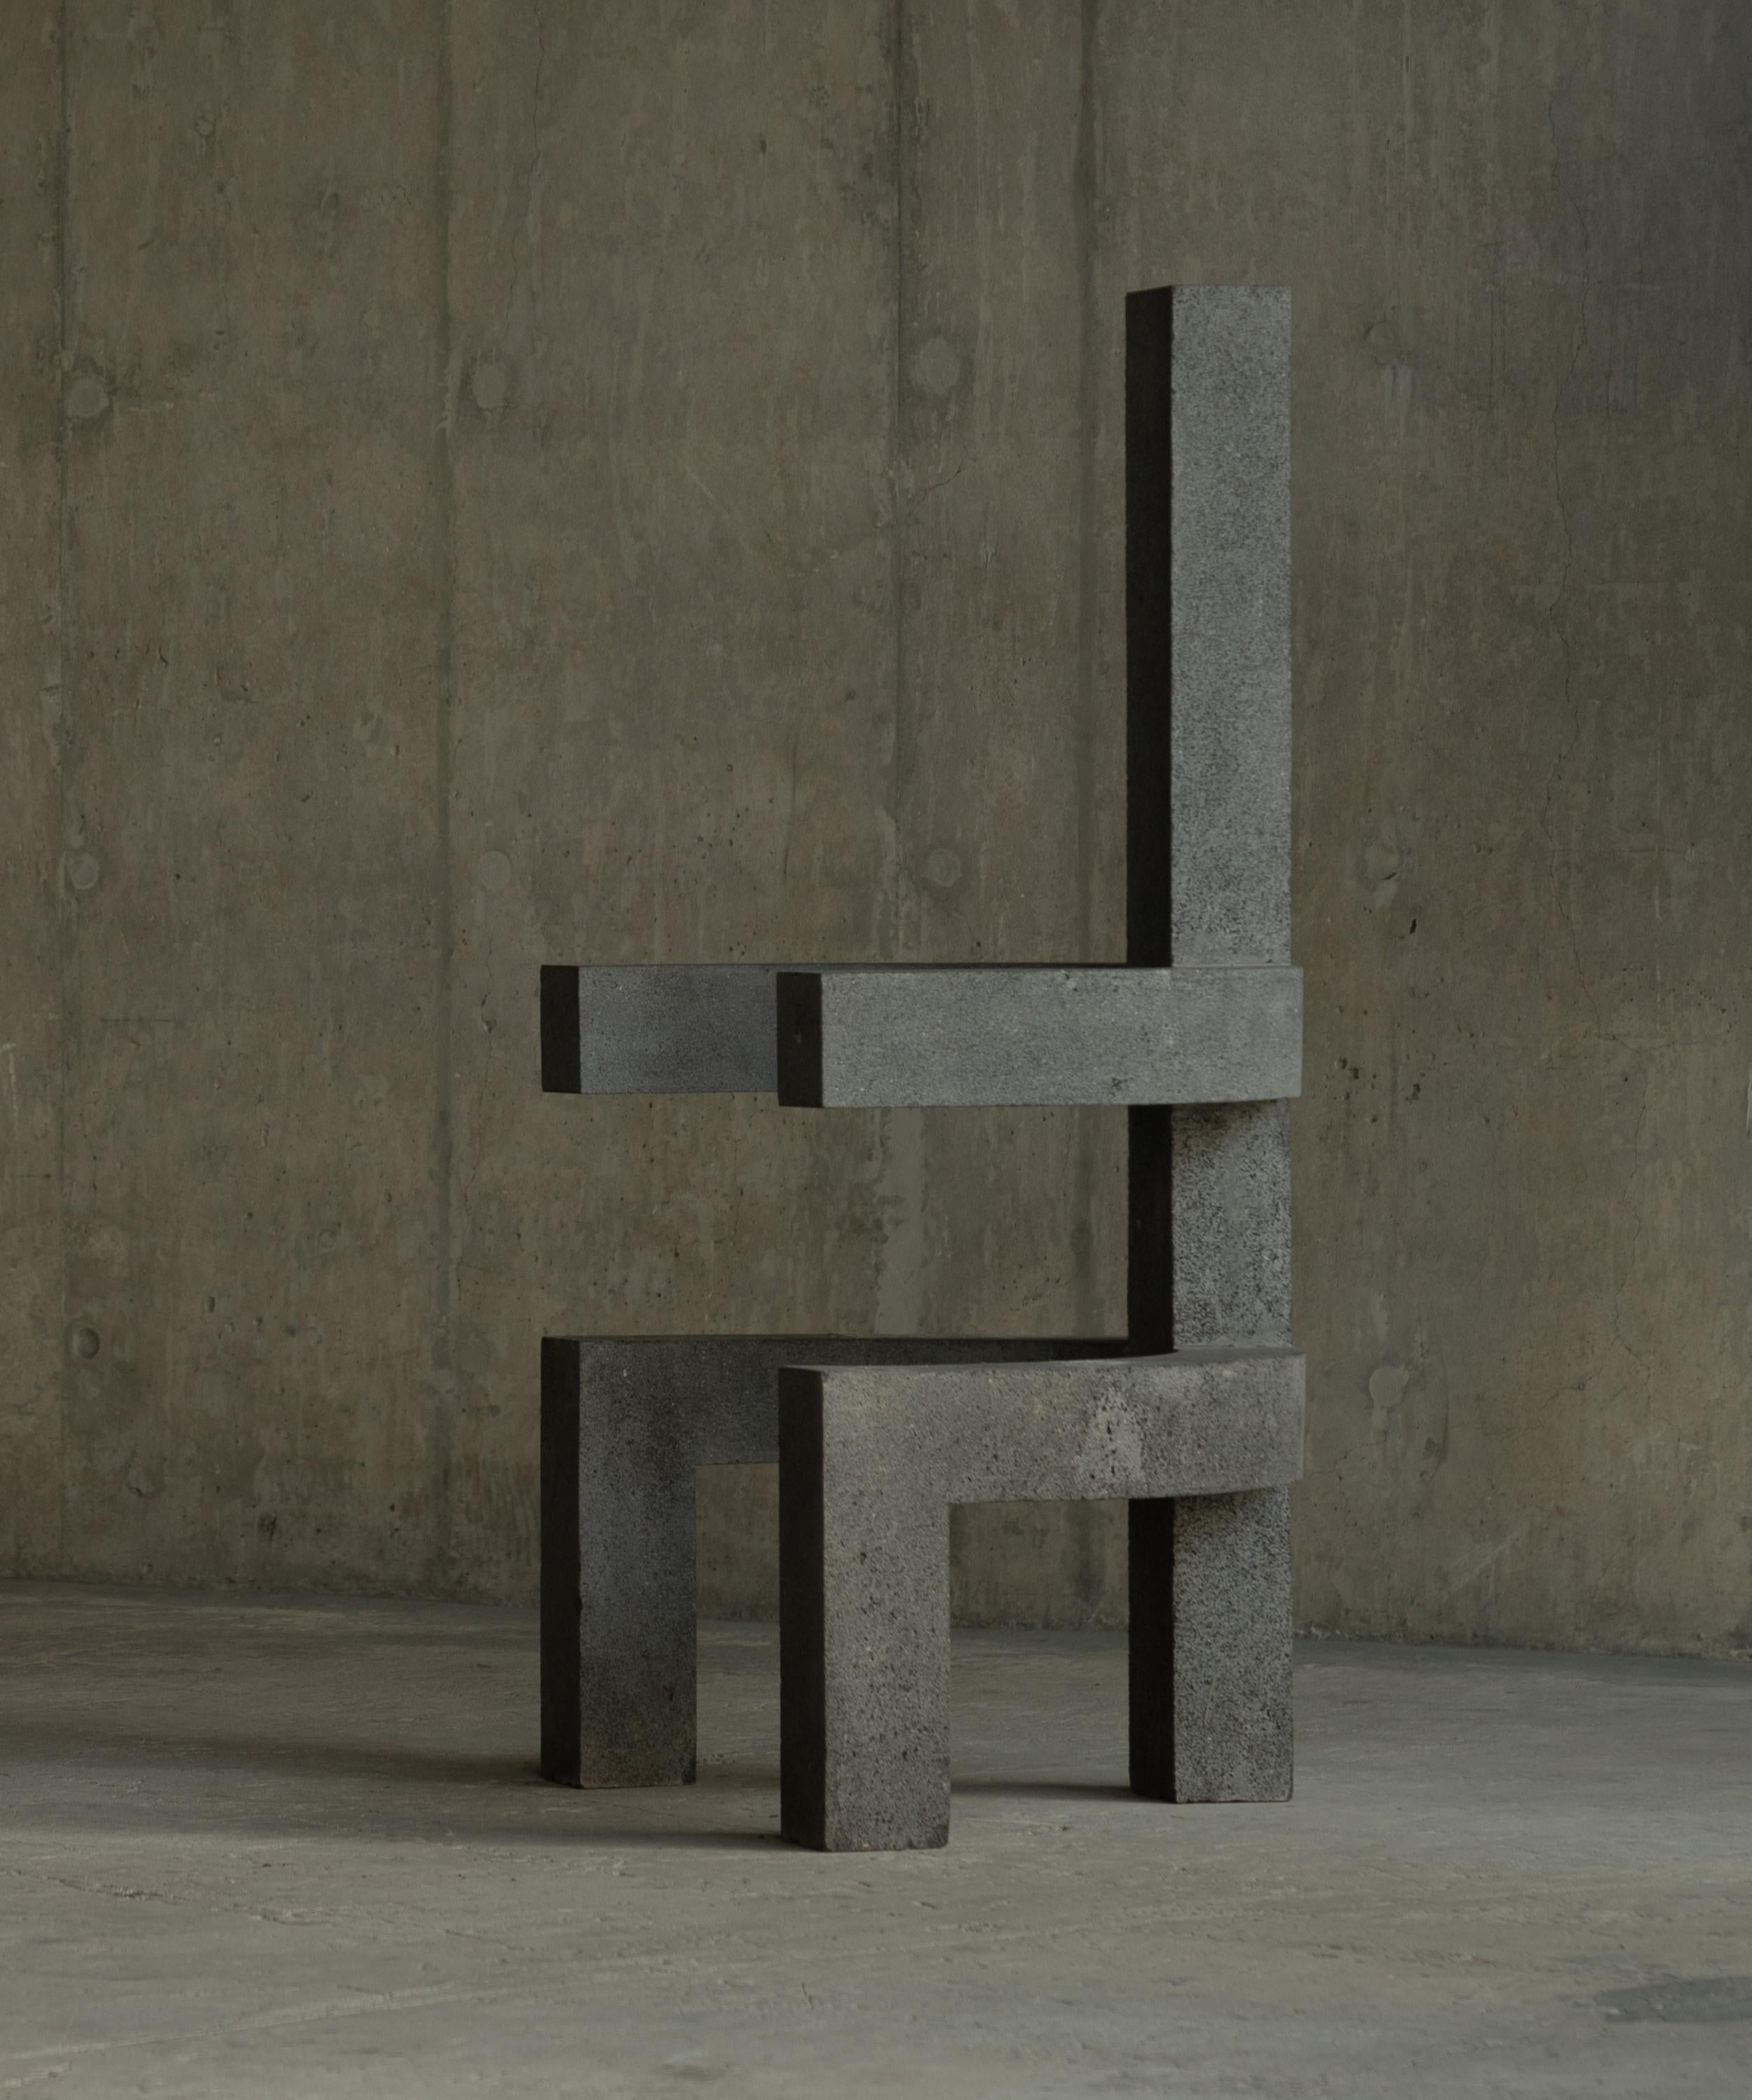 Tlakatl Skulpturaler Stuhl von Mesawa
MATERIALIEN: Vulkanisches Gestein.
Abmessungen: T 62 x B 85 x H 150 cm.

Mesawa ist eine mexikanische Designmarke, die von dem Architekten Santiago Sierra und dem Designer Diego Linares gegründet wurde.

Mesawa